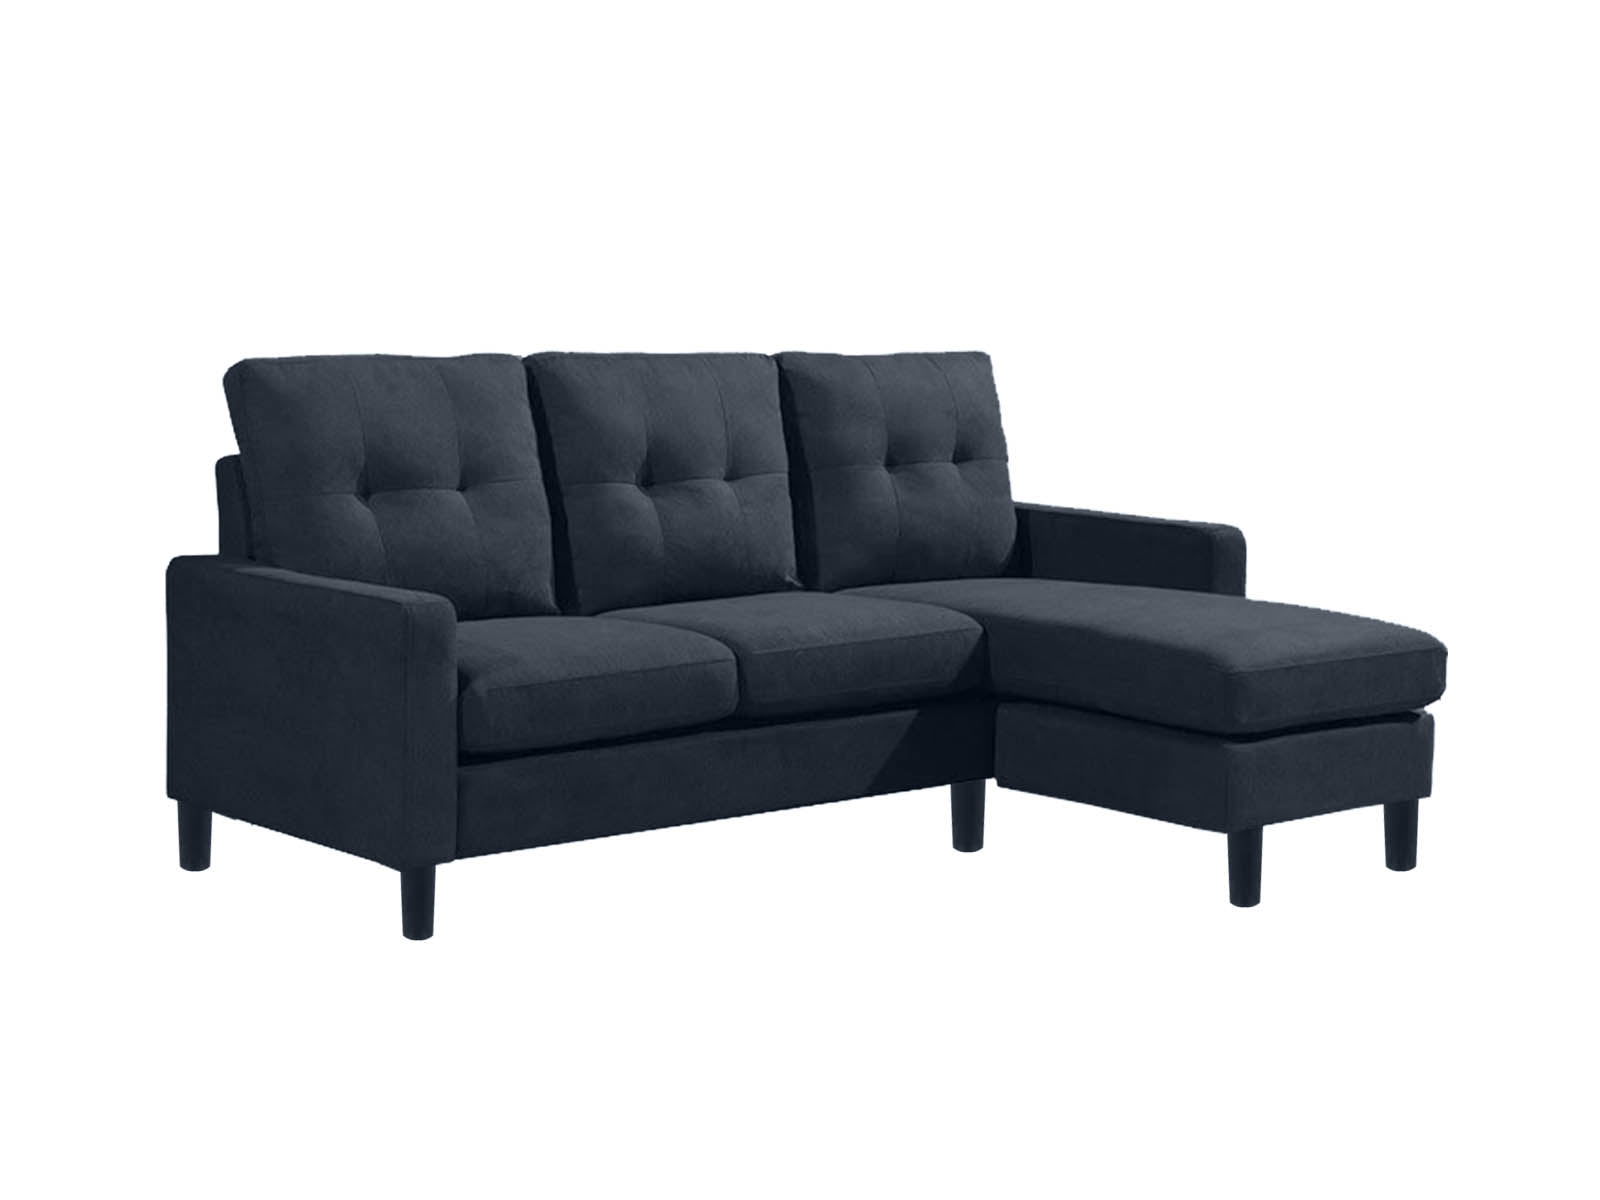 T Hewitt Sectional Sofa